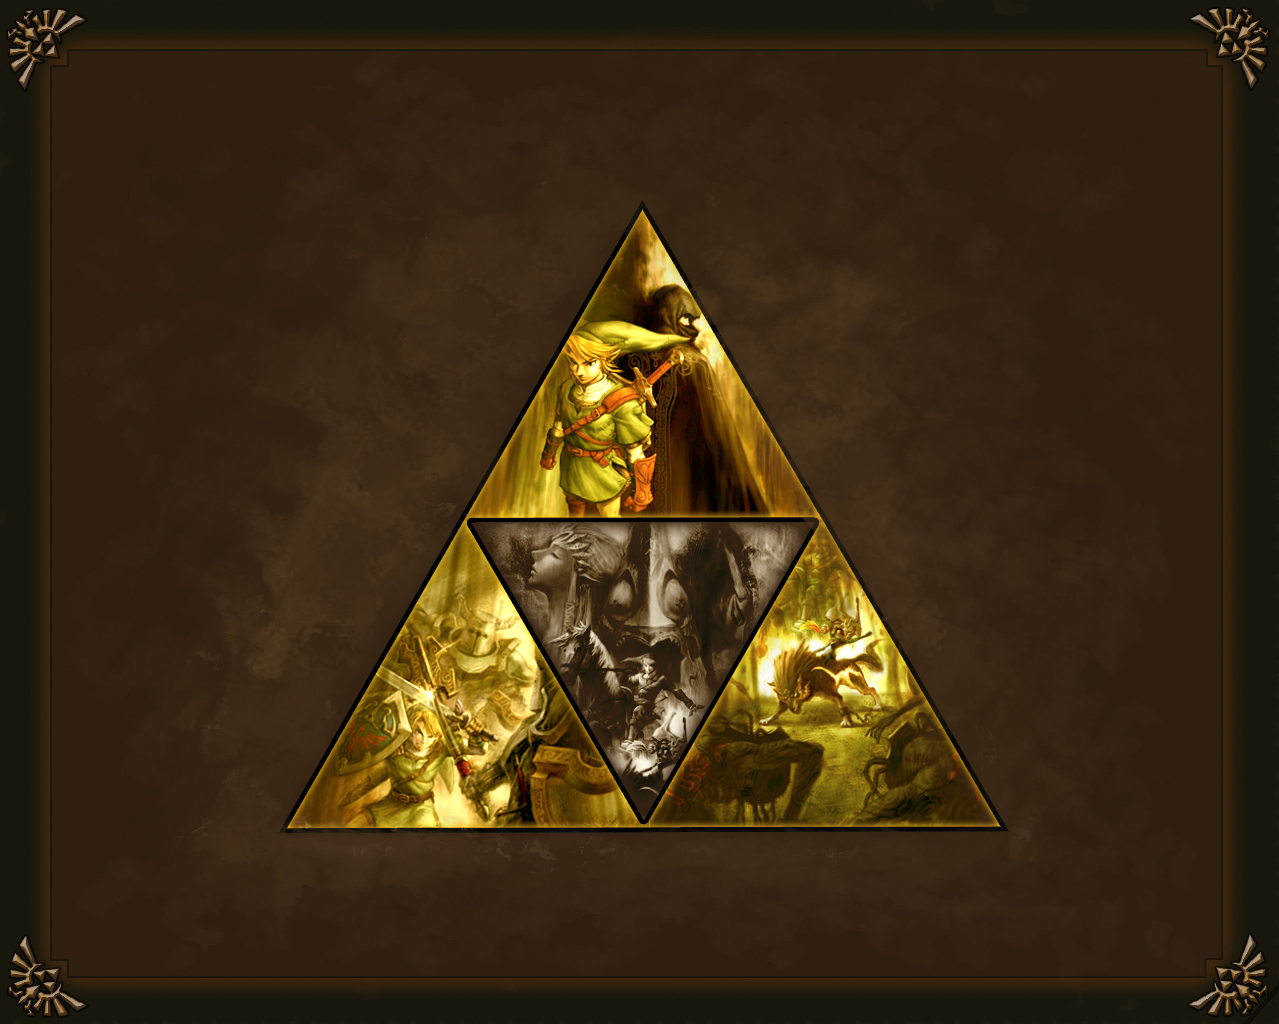 légende de zelda crépuscule fond d'écran princesse,pyramide,triangle,monument